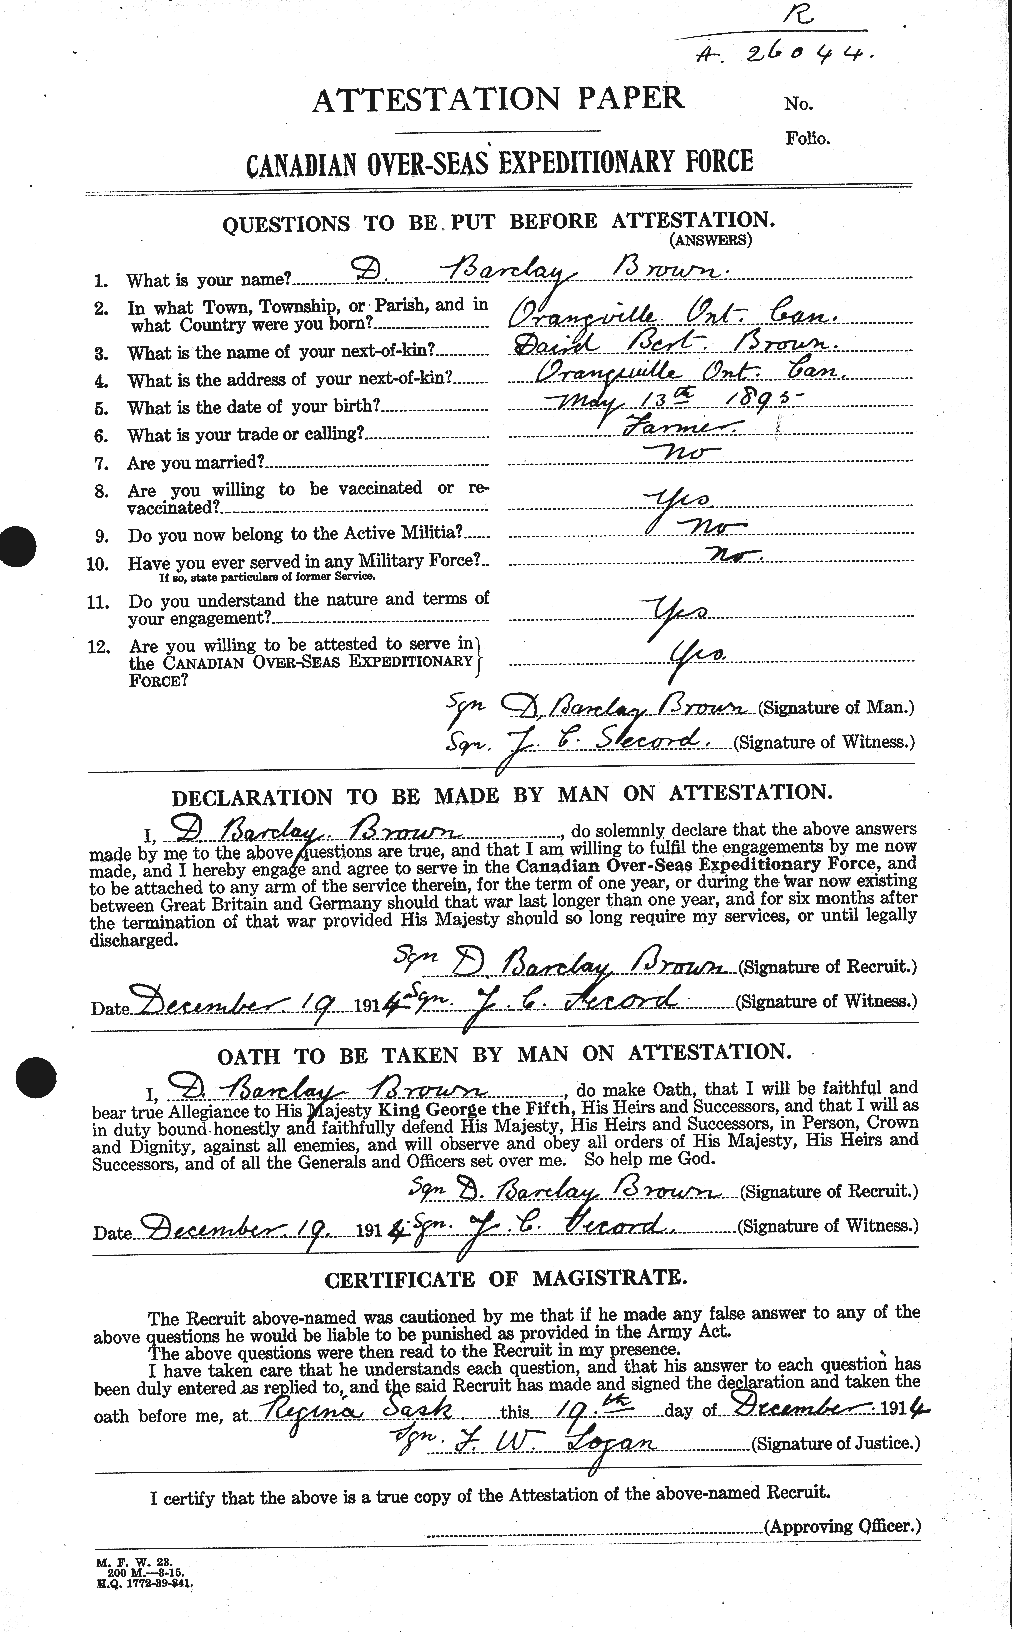 Dossiers du Personnel de la Première Guerre mondiale - CEC 263235a